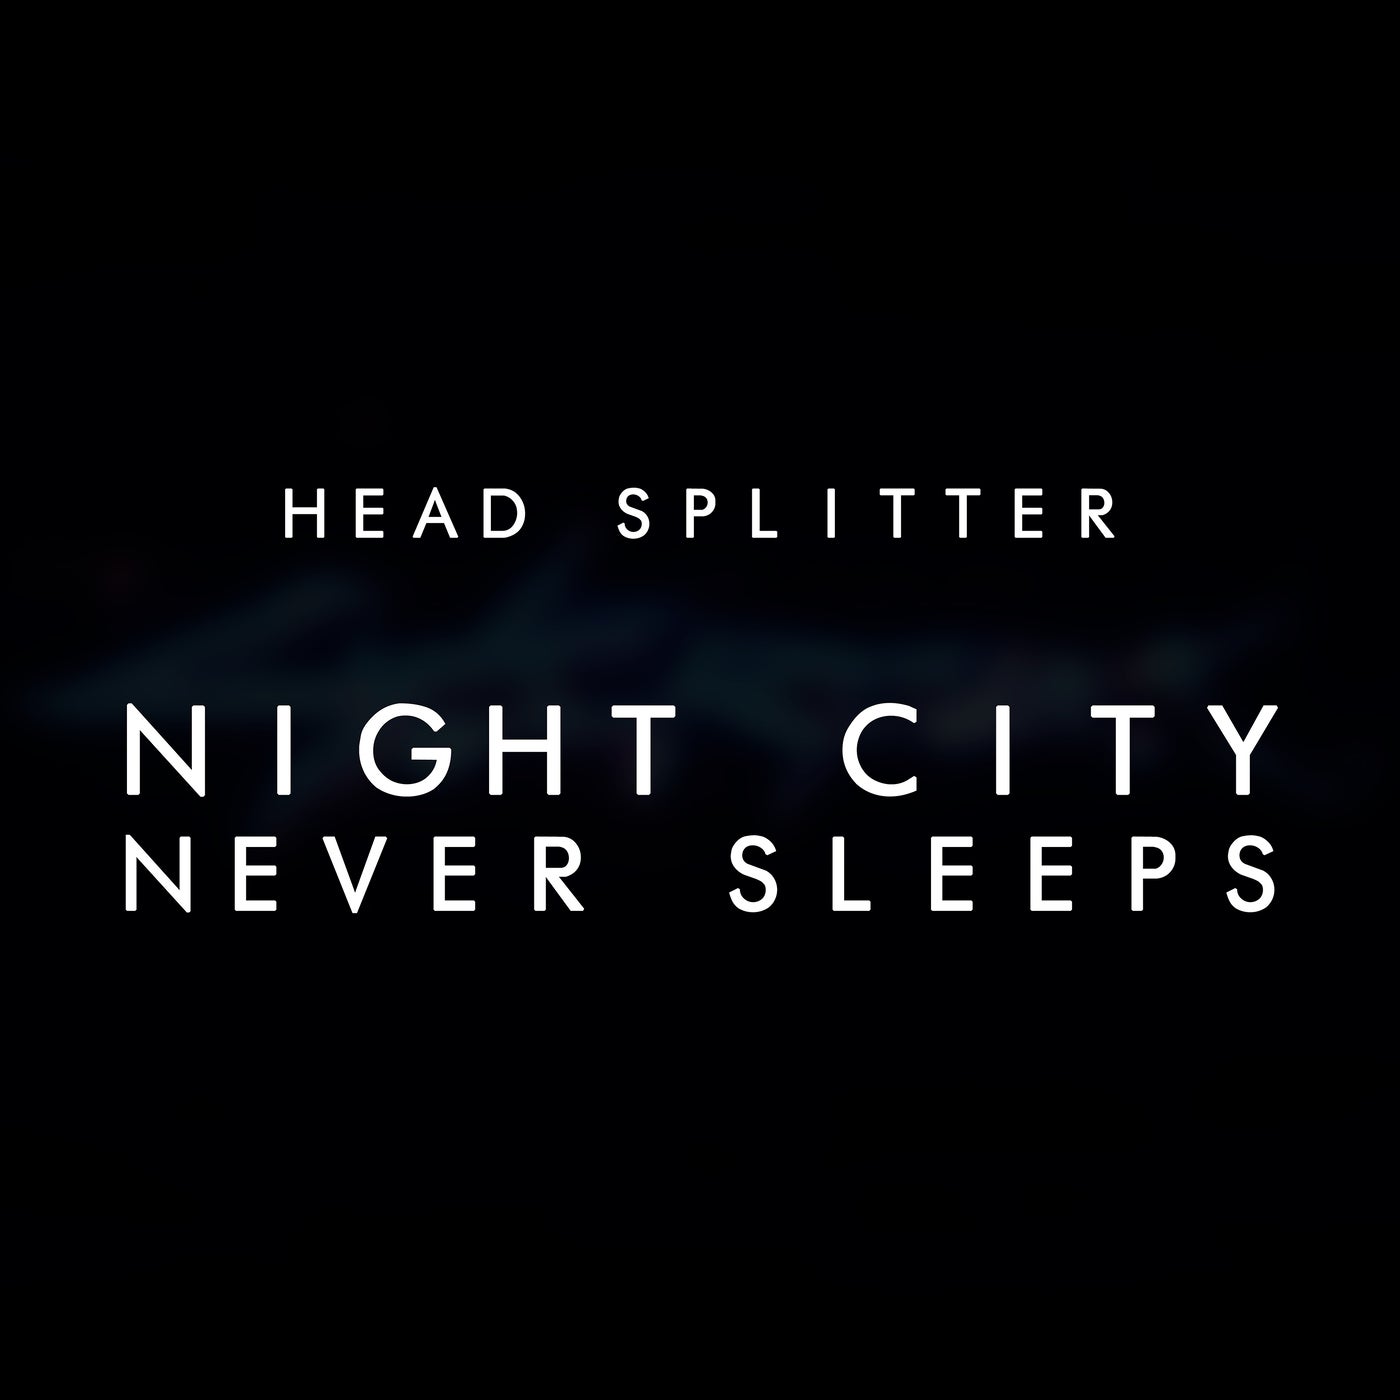 Night City Never Sleeps